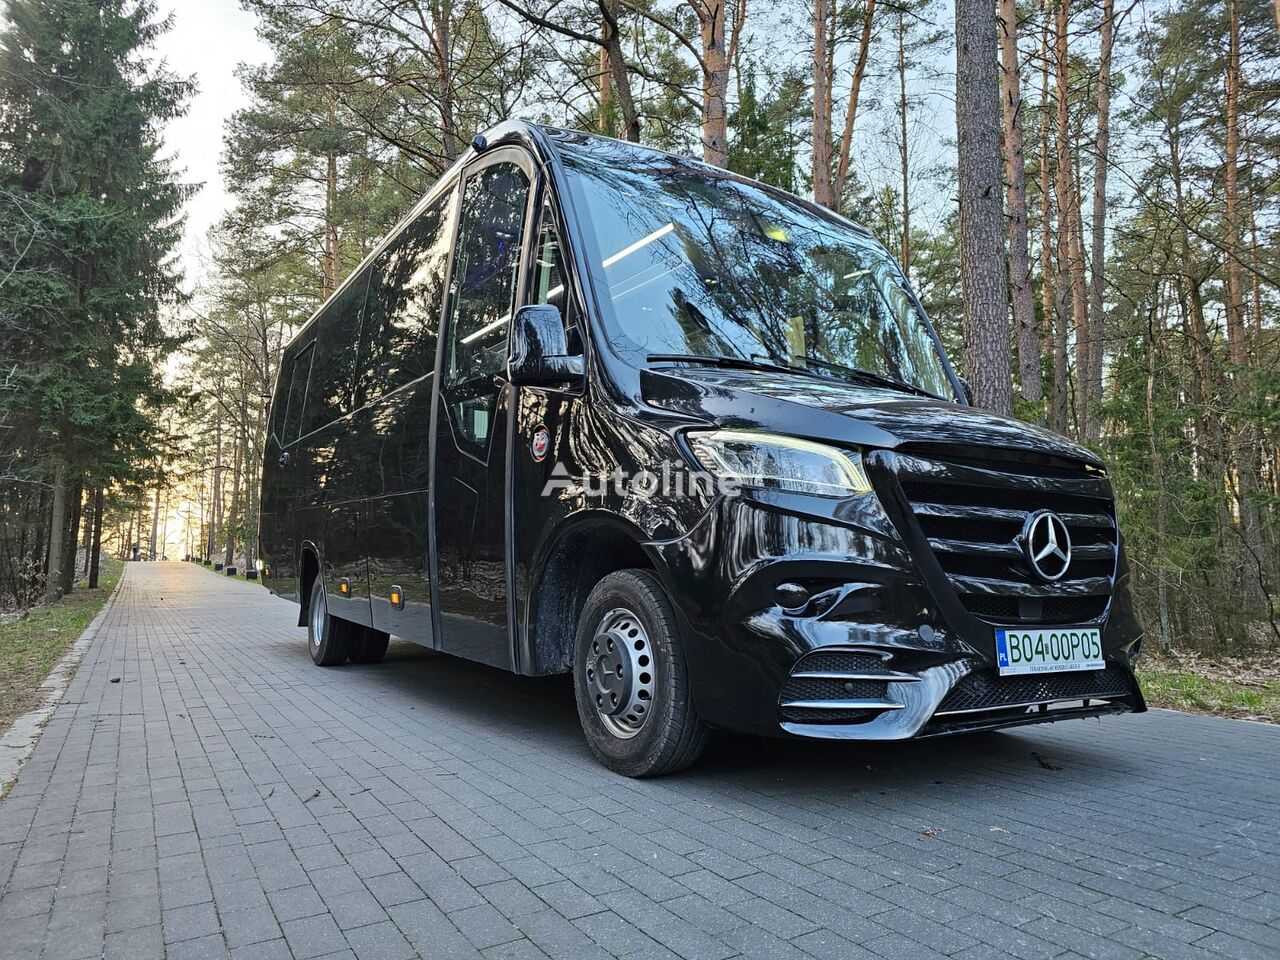 nowy autokar turystyczny Mercedes-Benz Sprinter miejsc: 31 TELMA DOSTĘPNY OD RĘKI!!